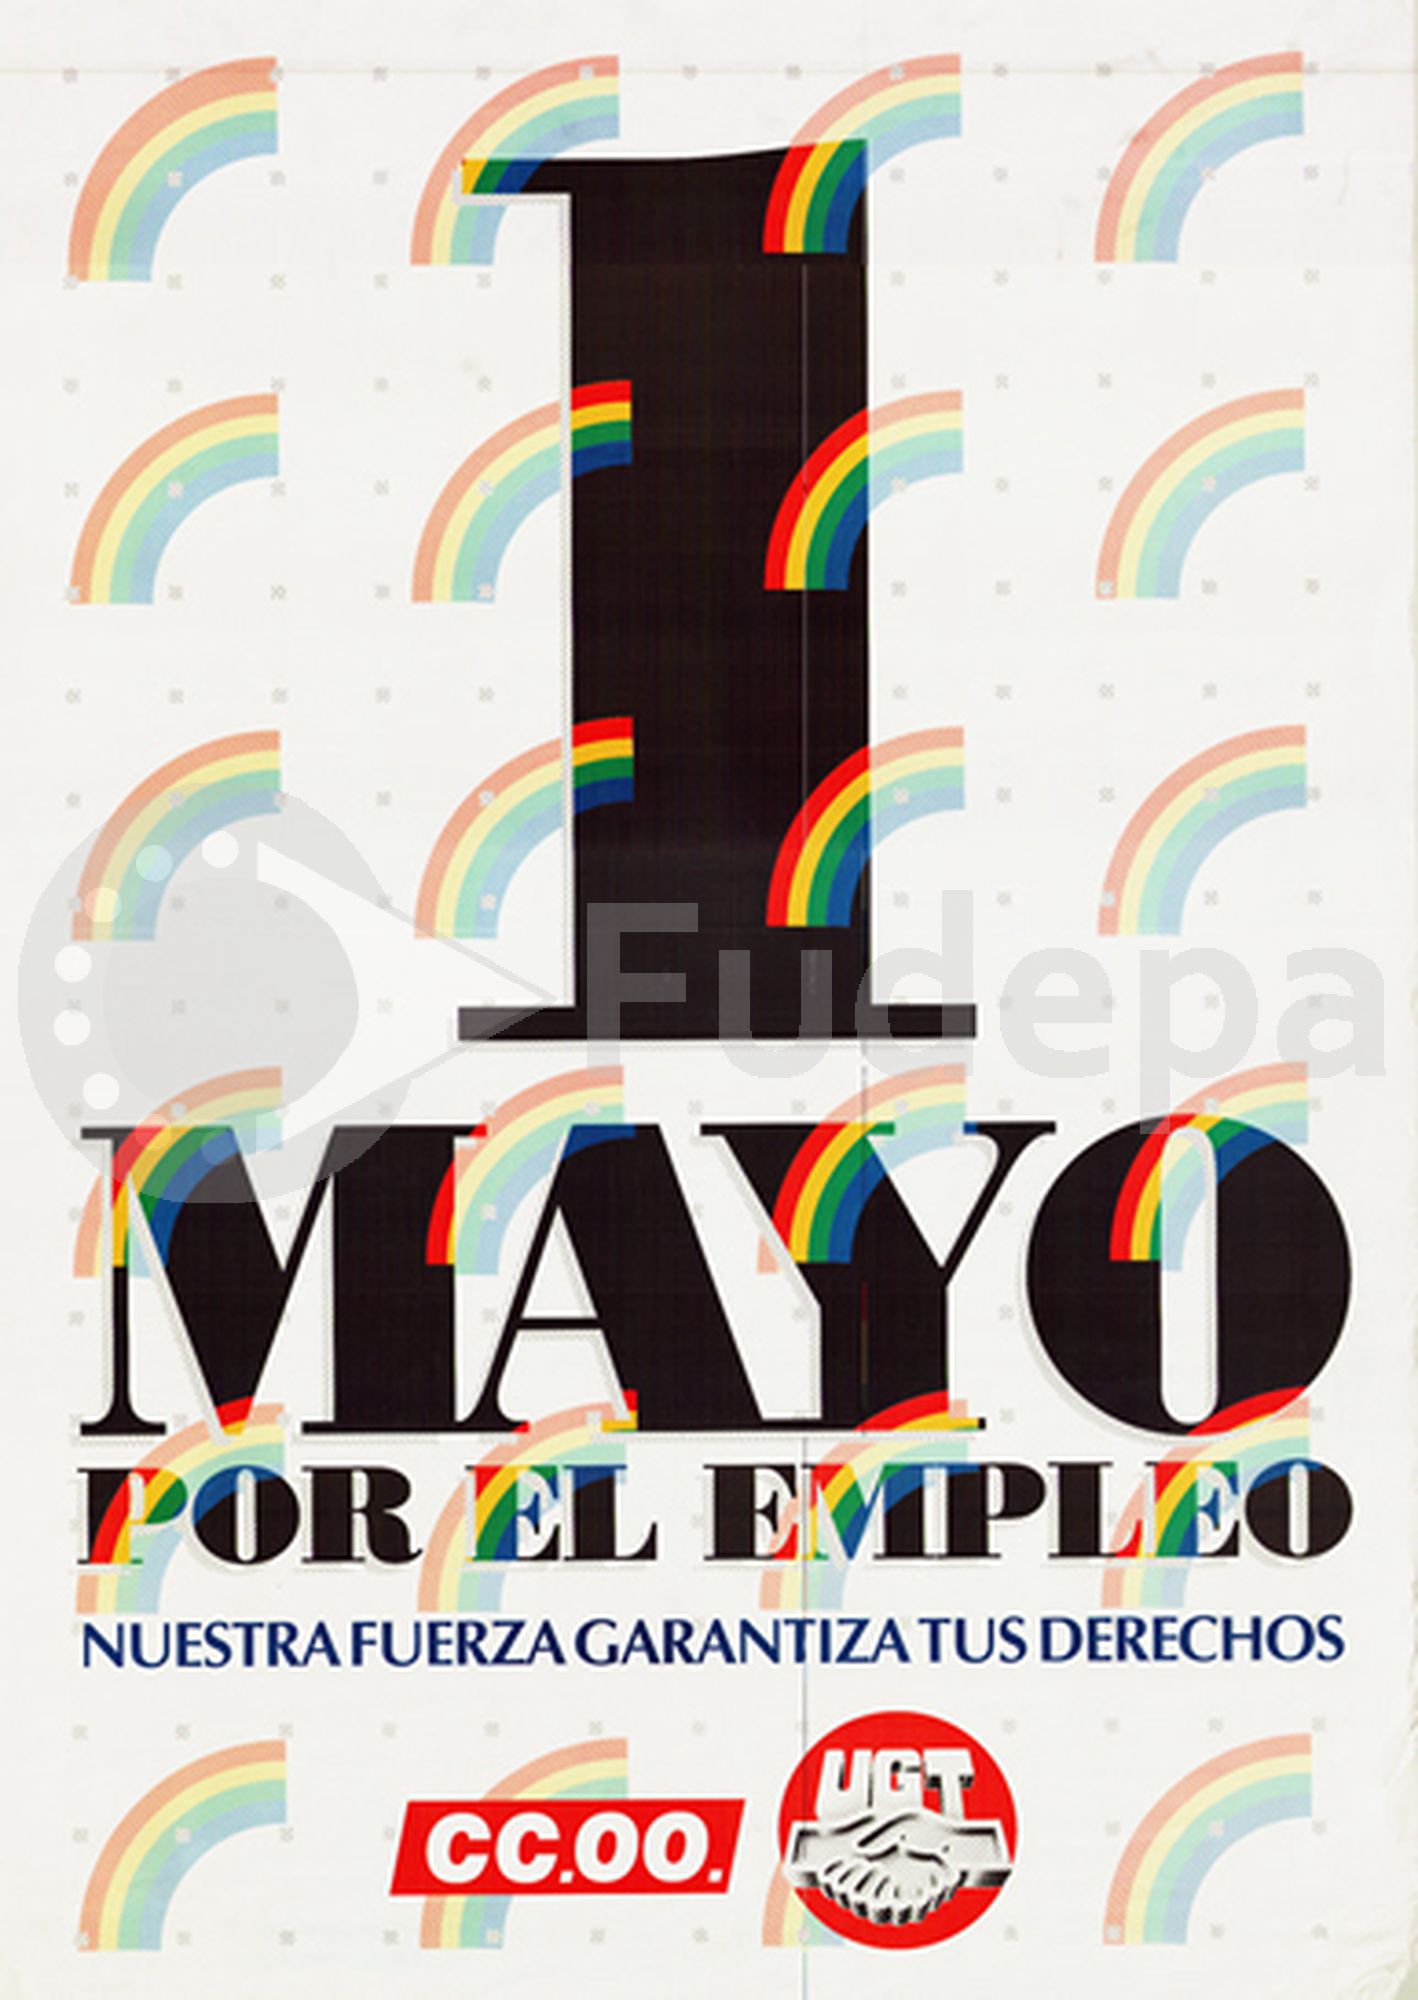 1995: Por el empleo. Nuestra fuerza garantiza tus derechos